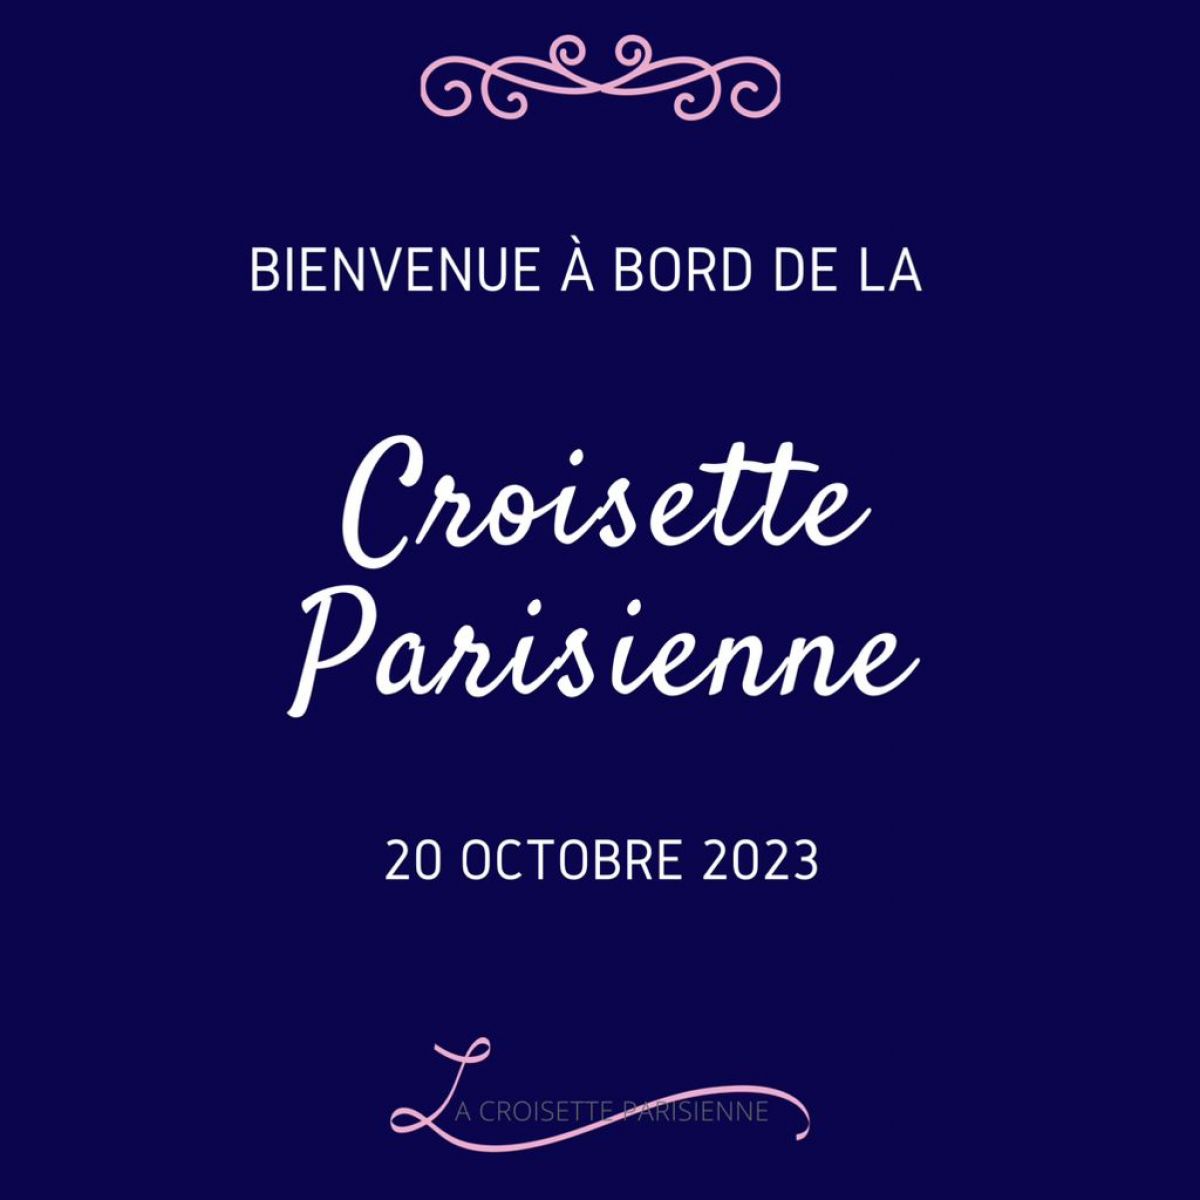 La Croisette Parisienne